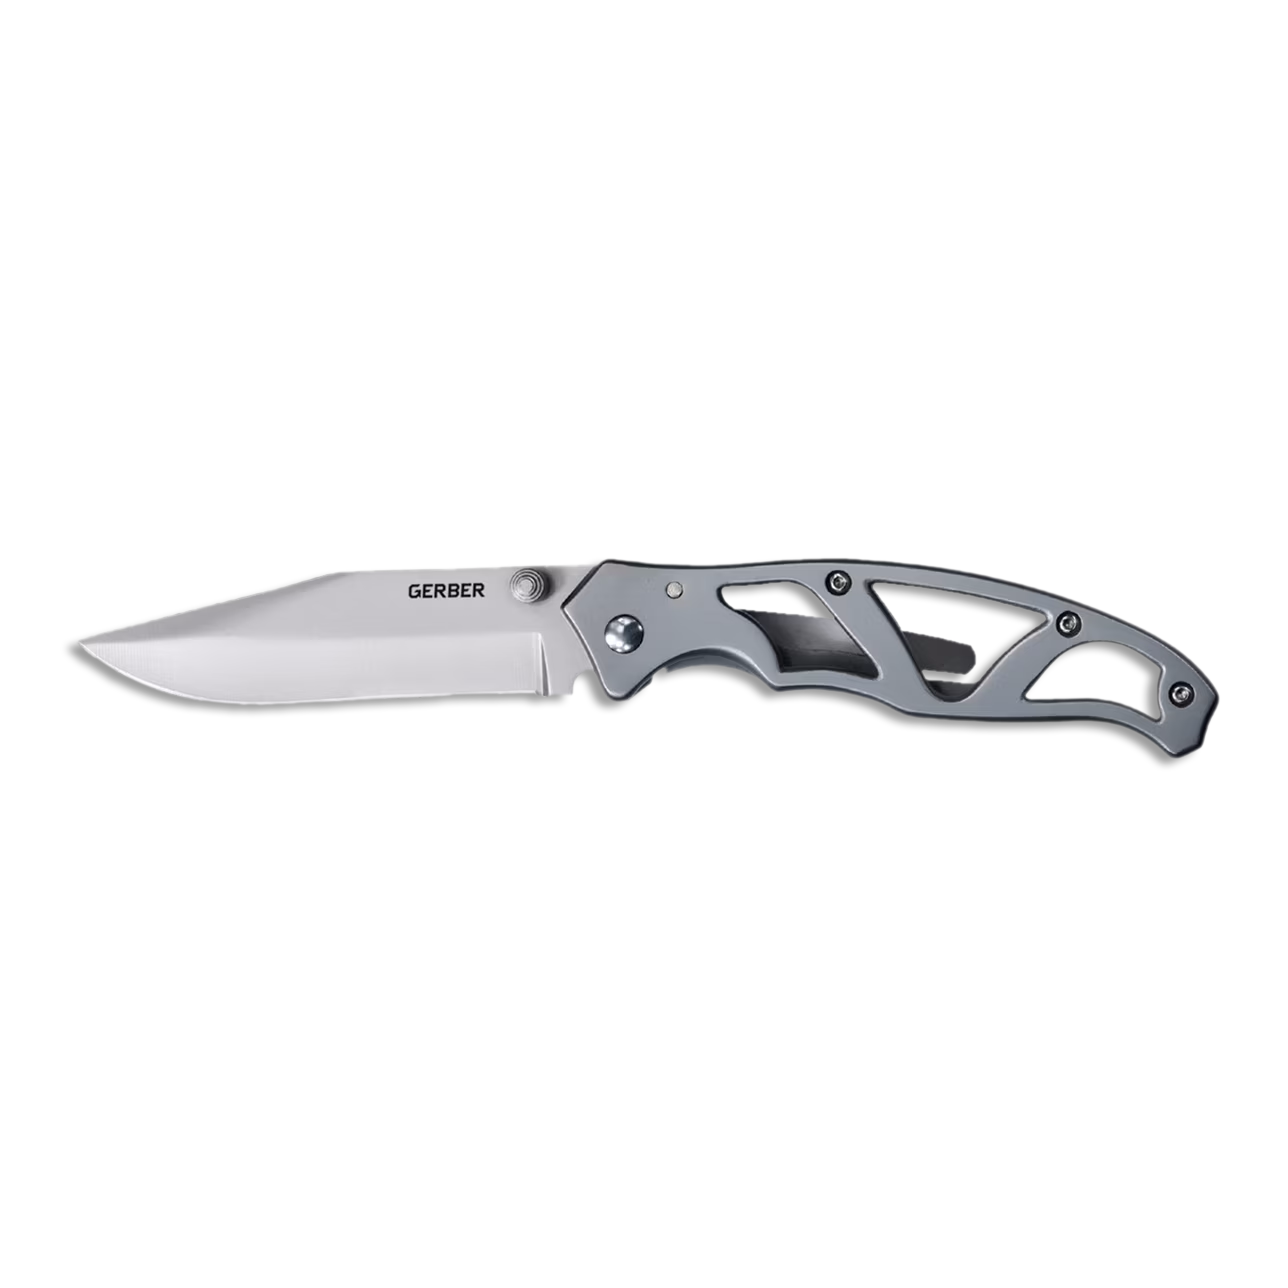 Paraframe Knife